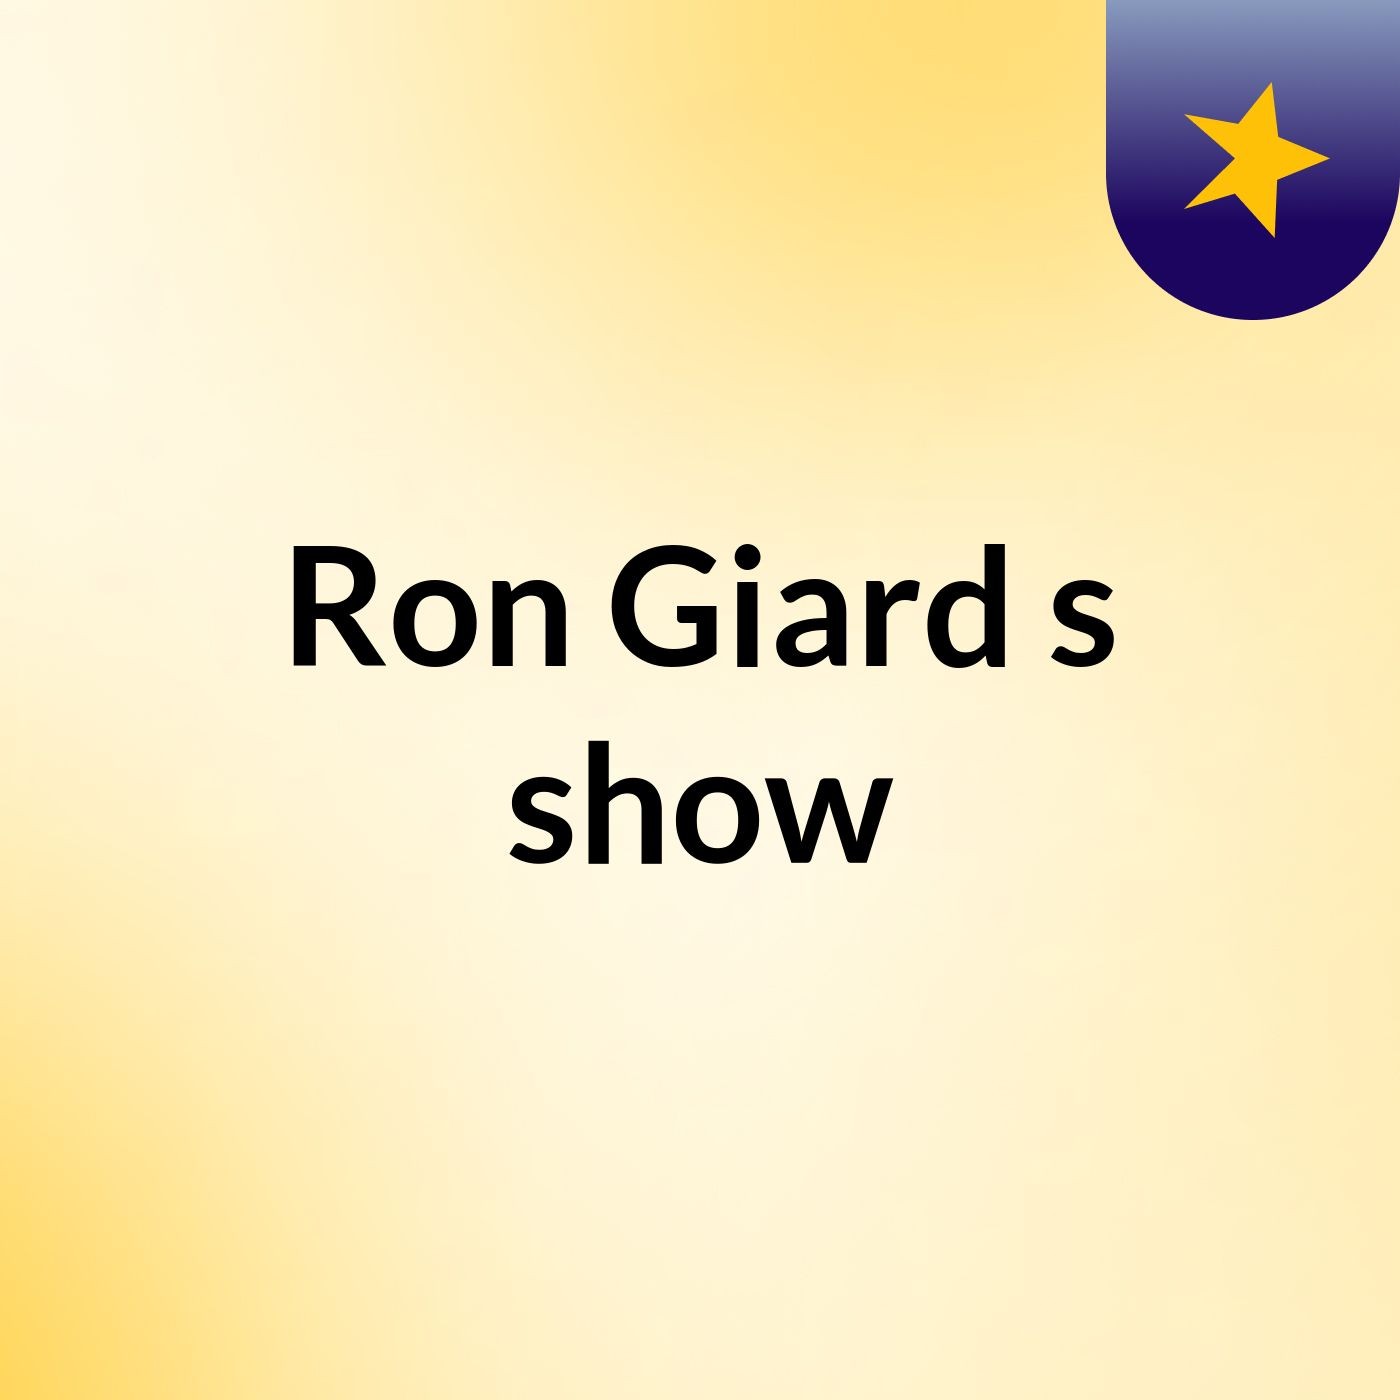 Ron Giard's show